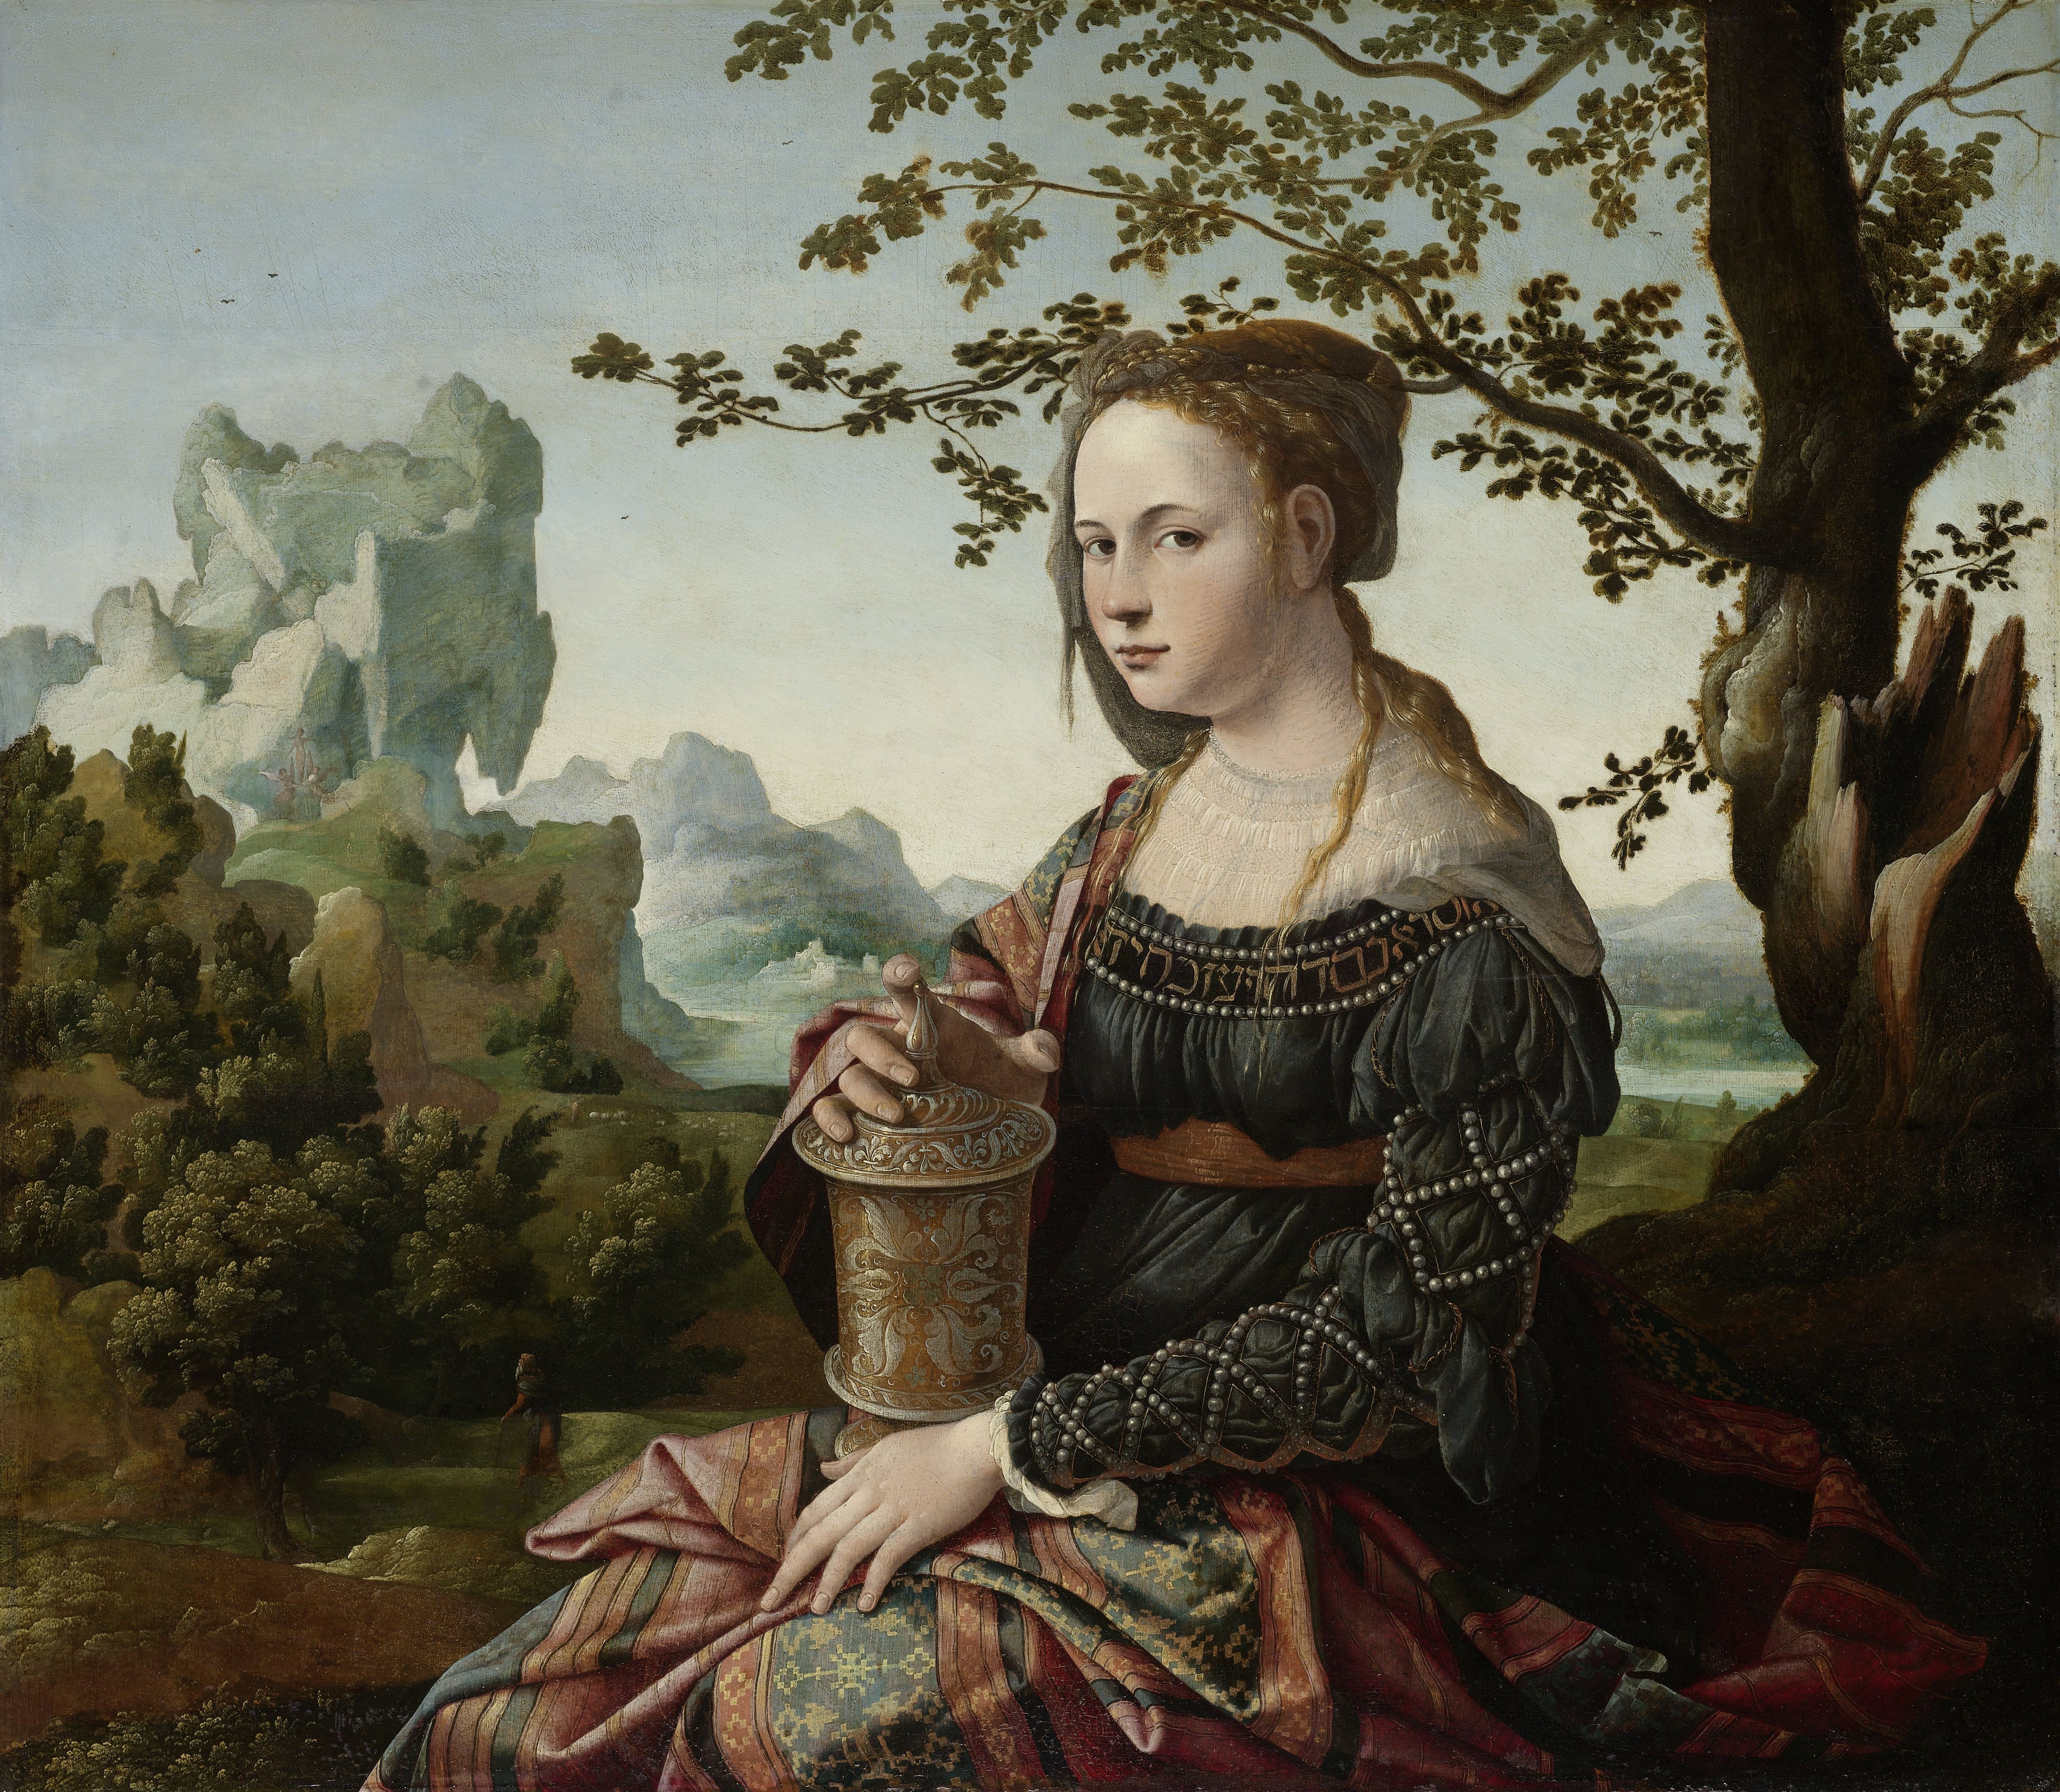 Painting of Mary Magdalene by Jan van Scorel - 1530 - 66,3 x 76 cm Rijksmuseum